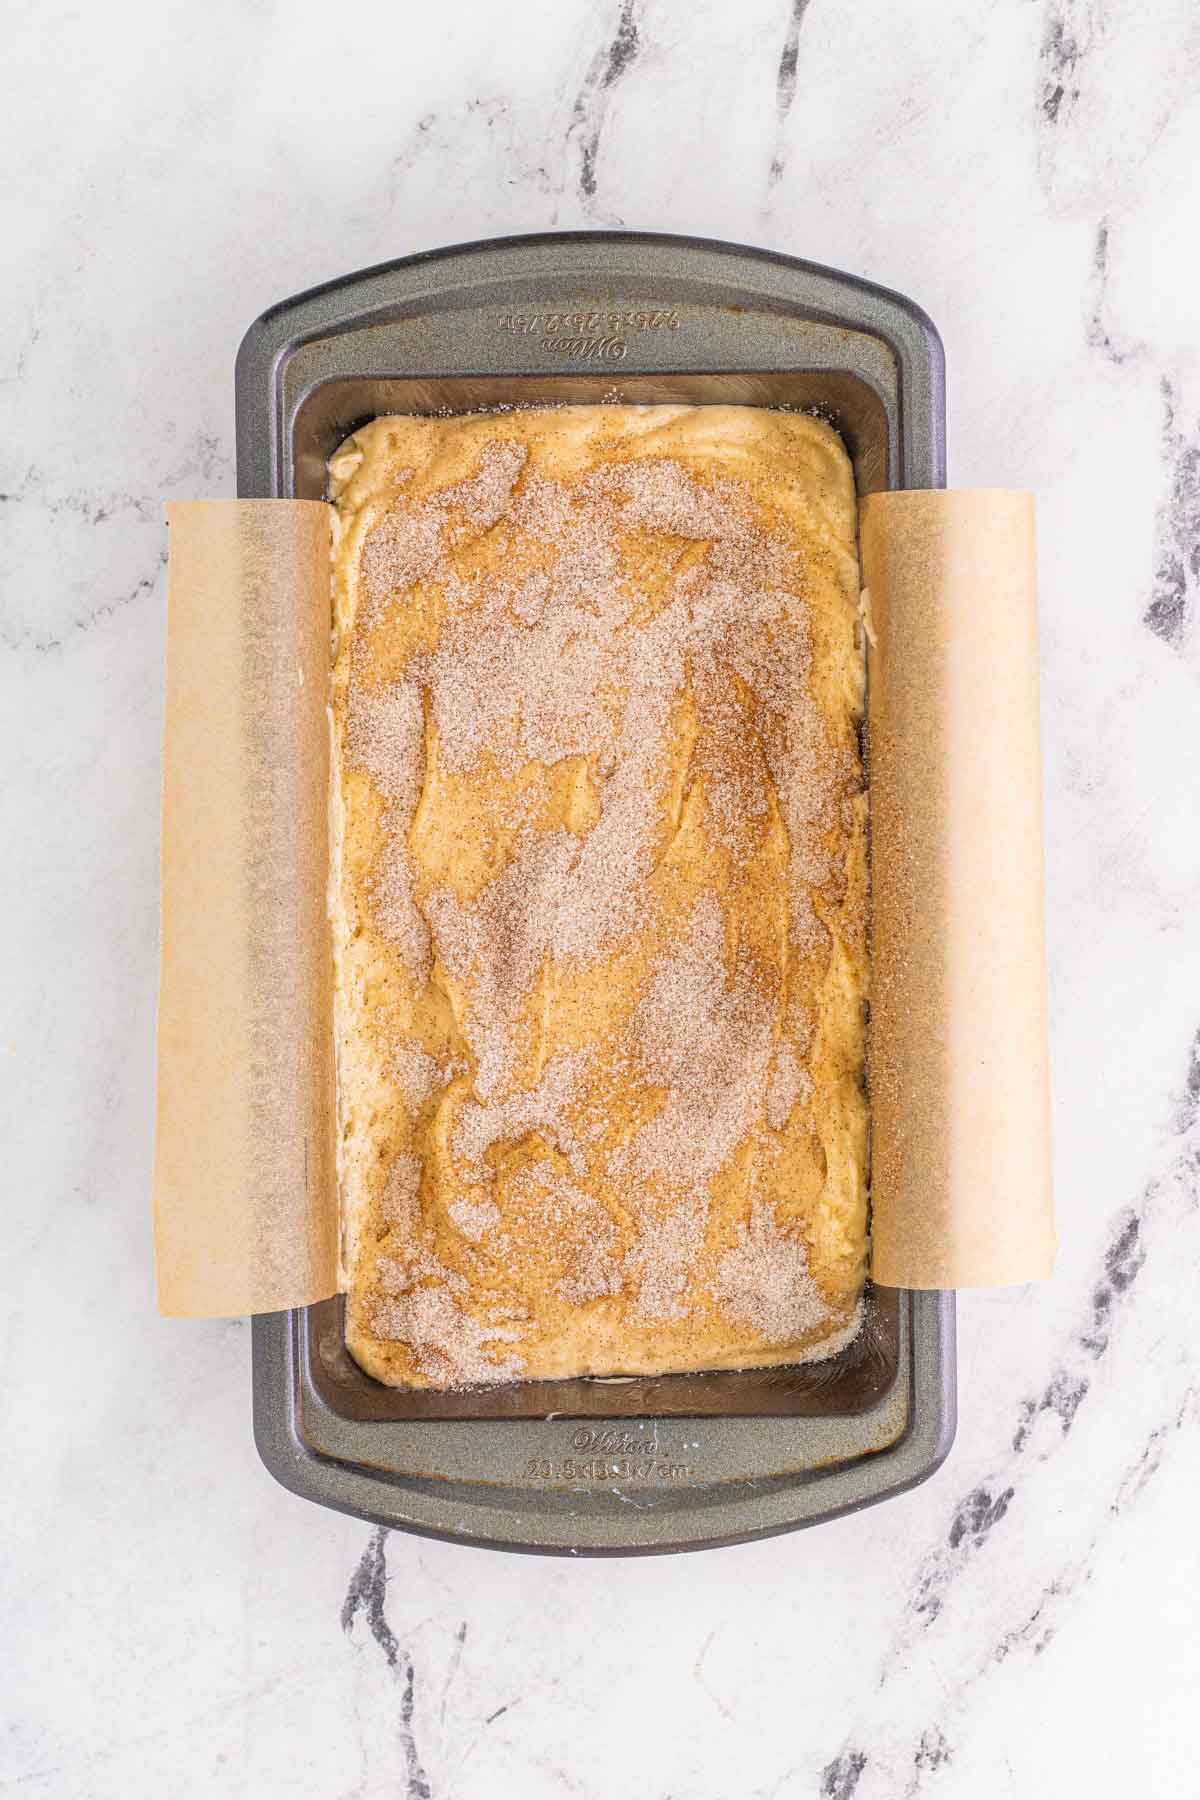 cinnamon swirl bread batter in a metal baking pan